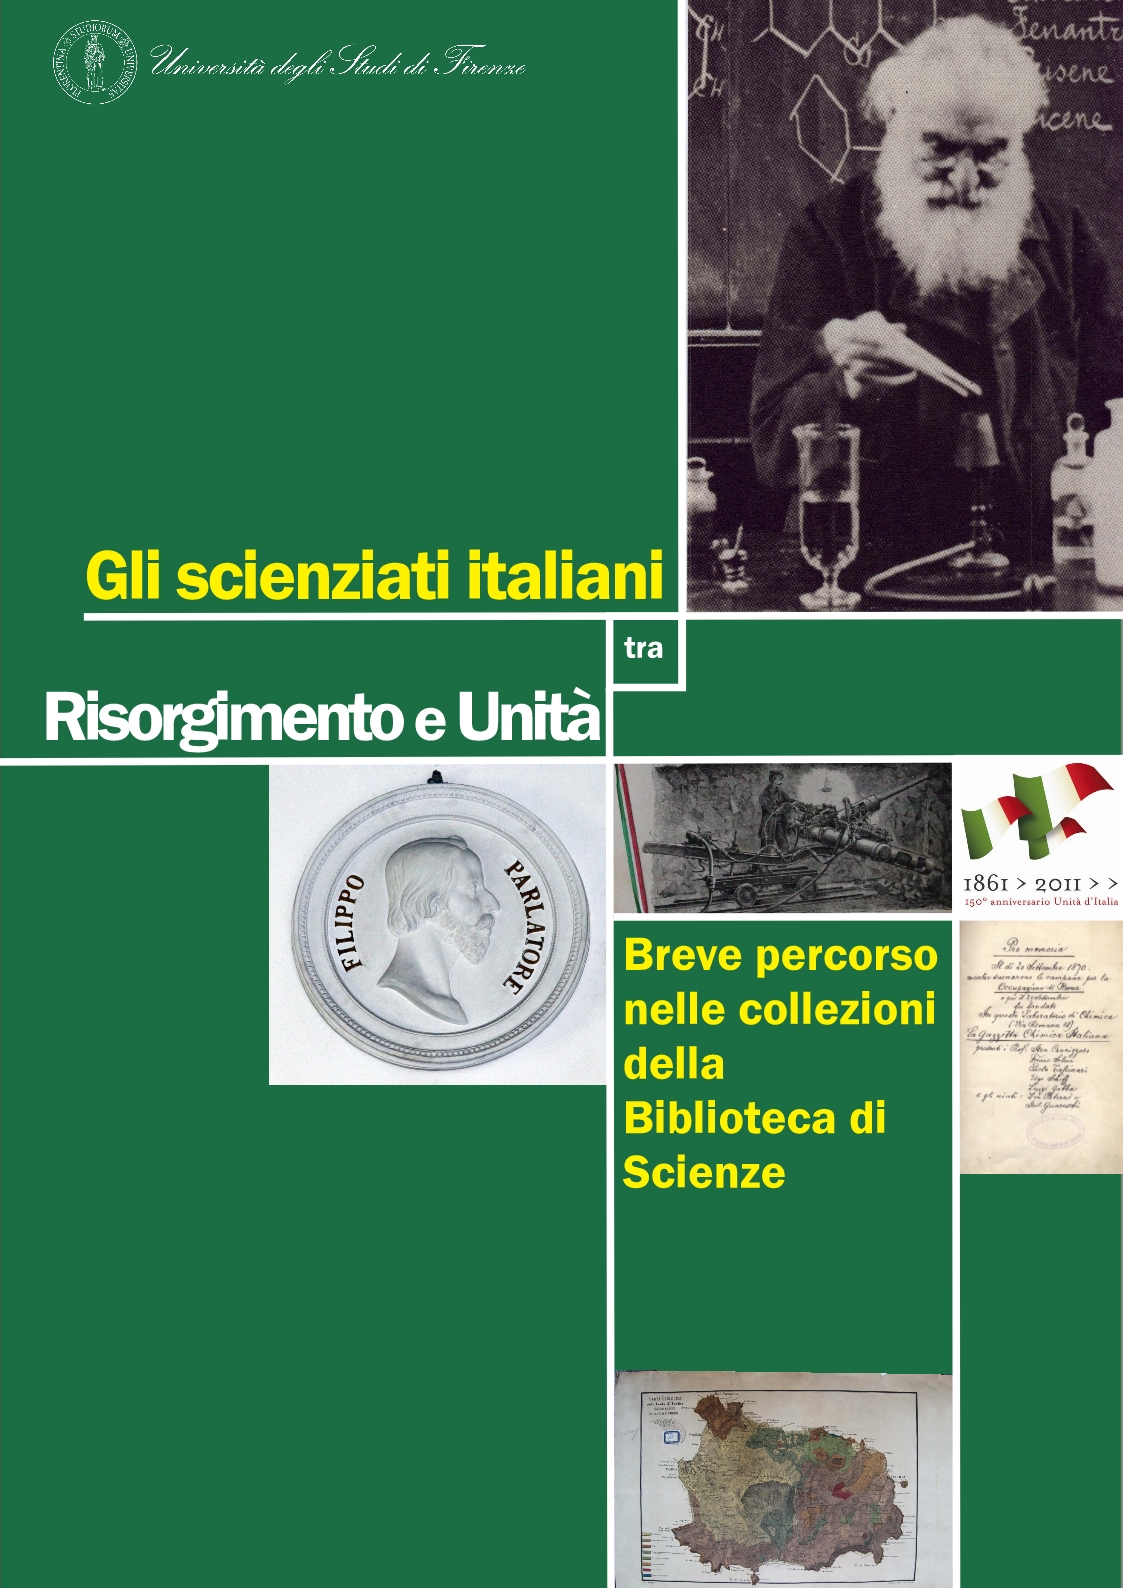 Italian scientists